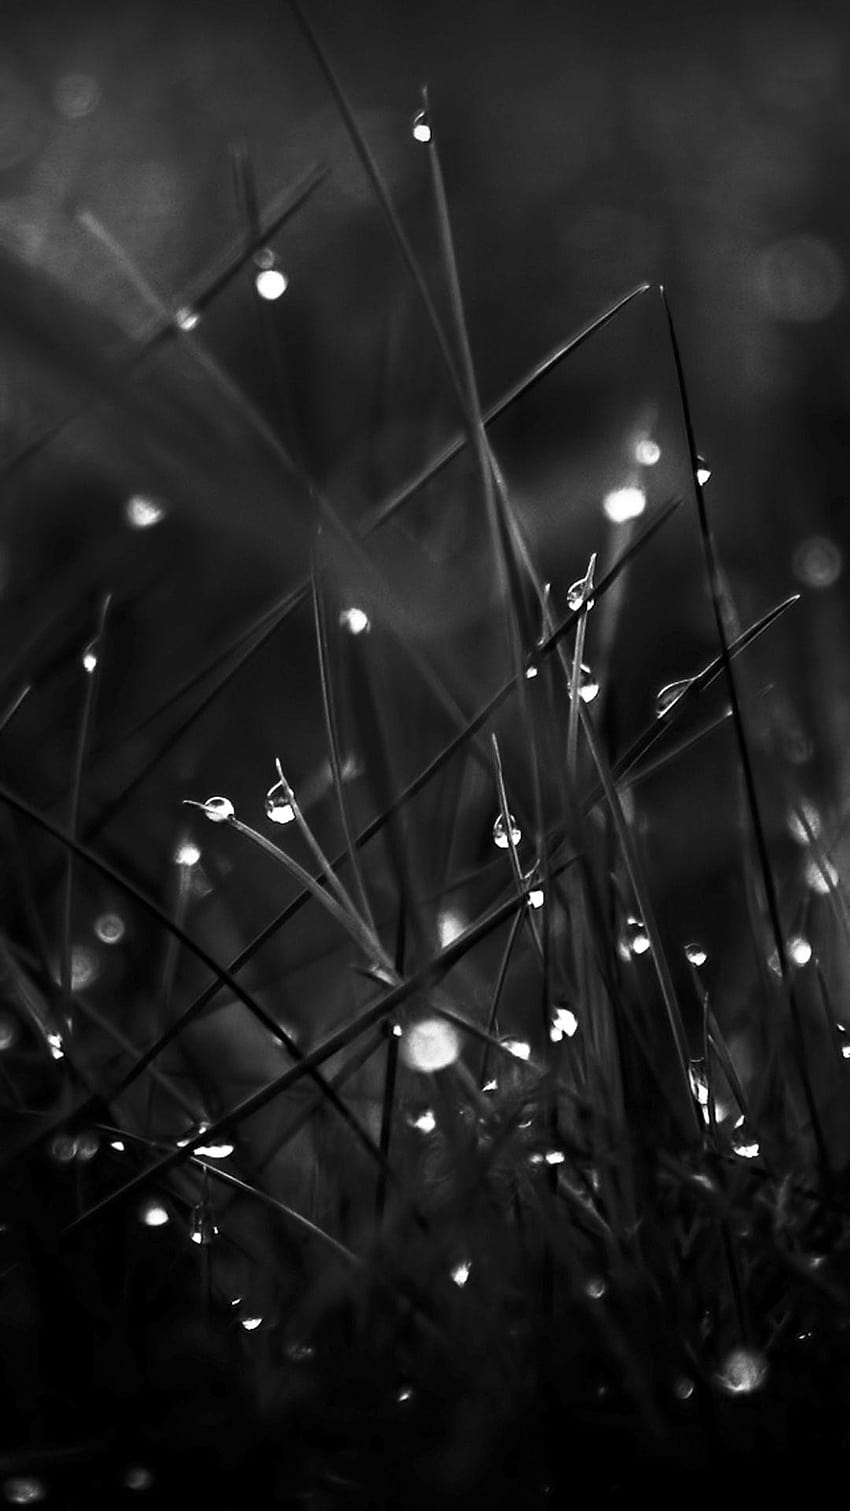 Dark Dew Morning Leafy Grass Landscape, dark iphone HD phone wallpaper